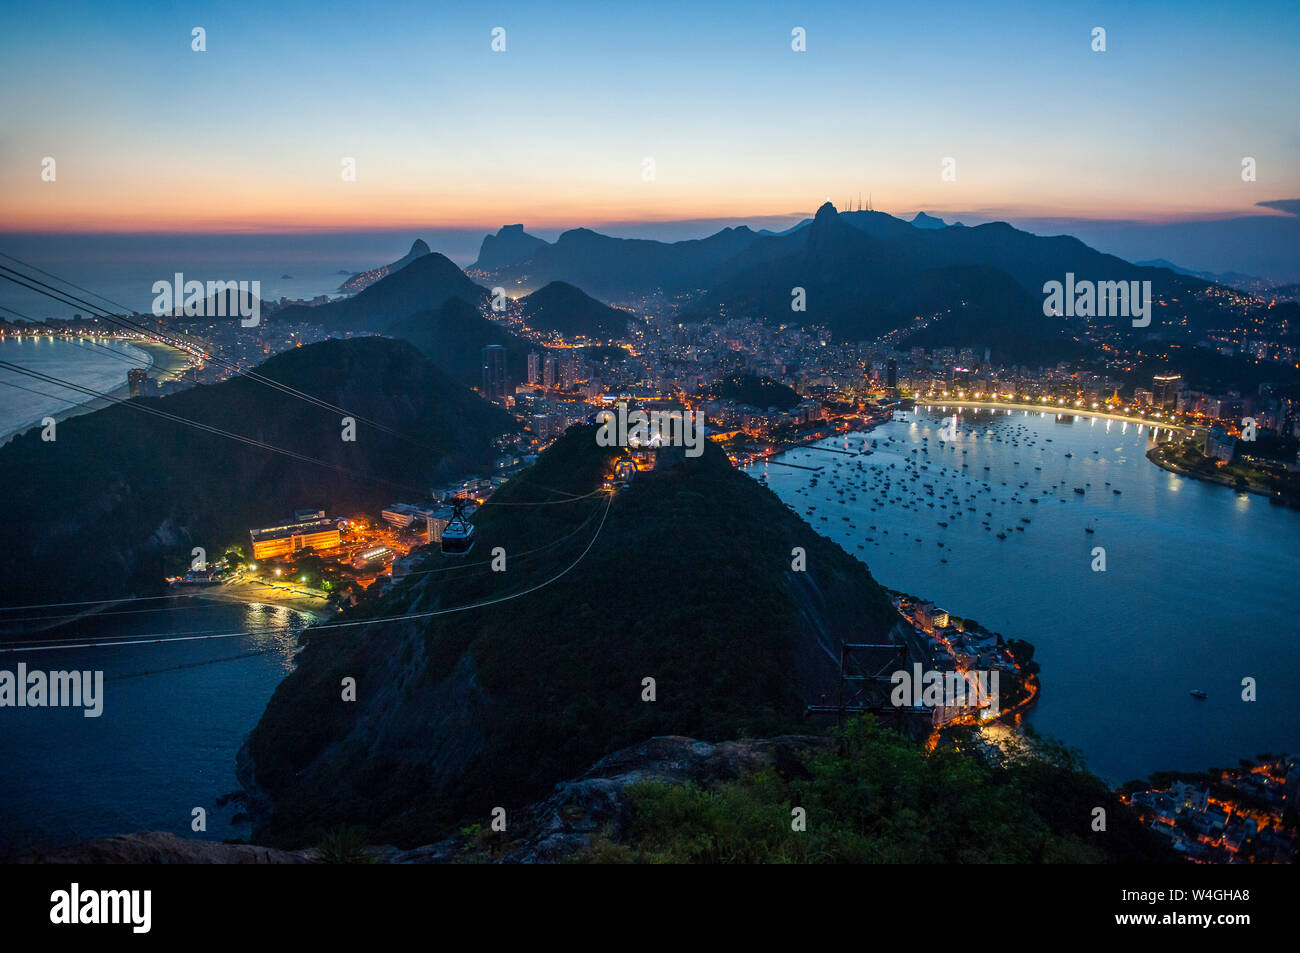 Vista desde la montaña Sugarloaf al atardecer, Río de Janeiro, Brasil Foto de stock